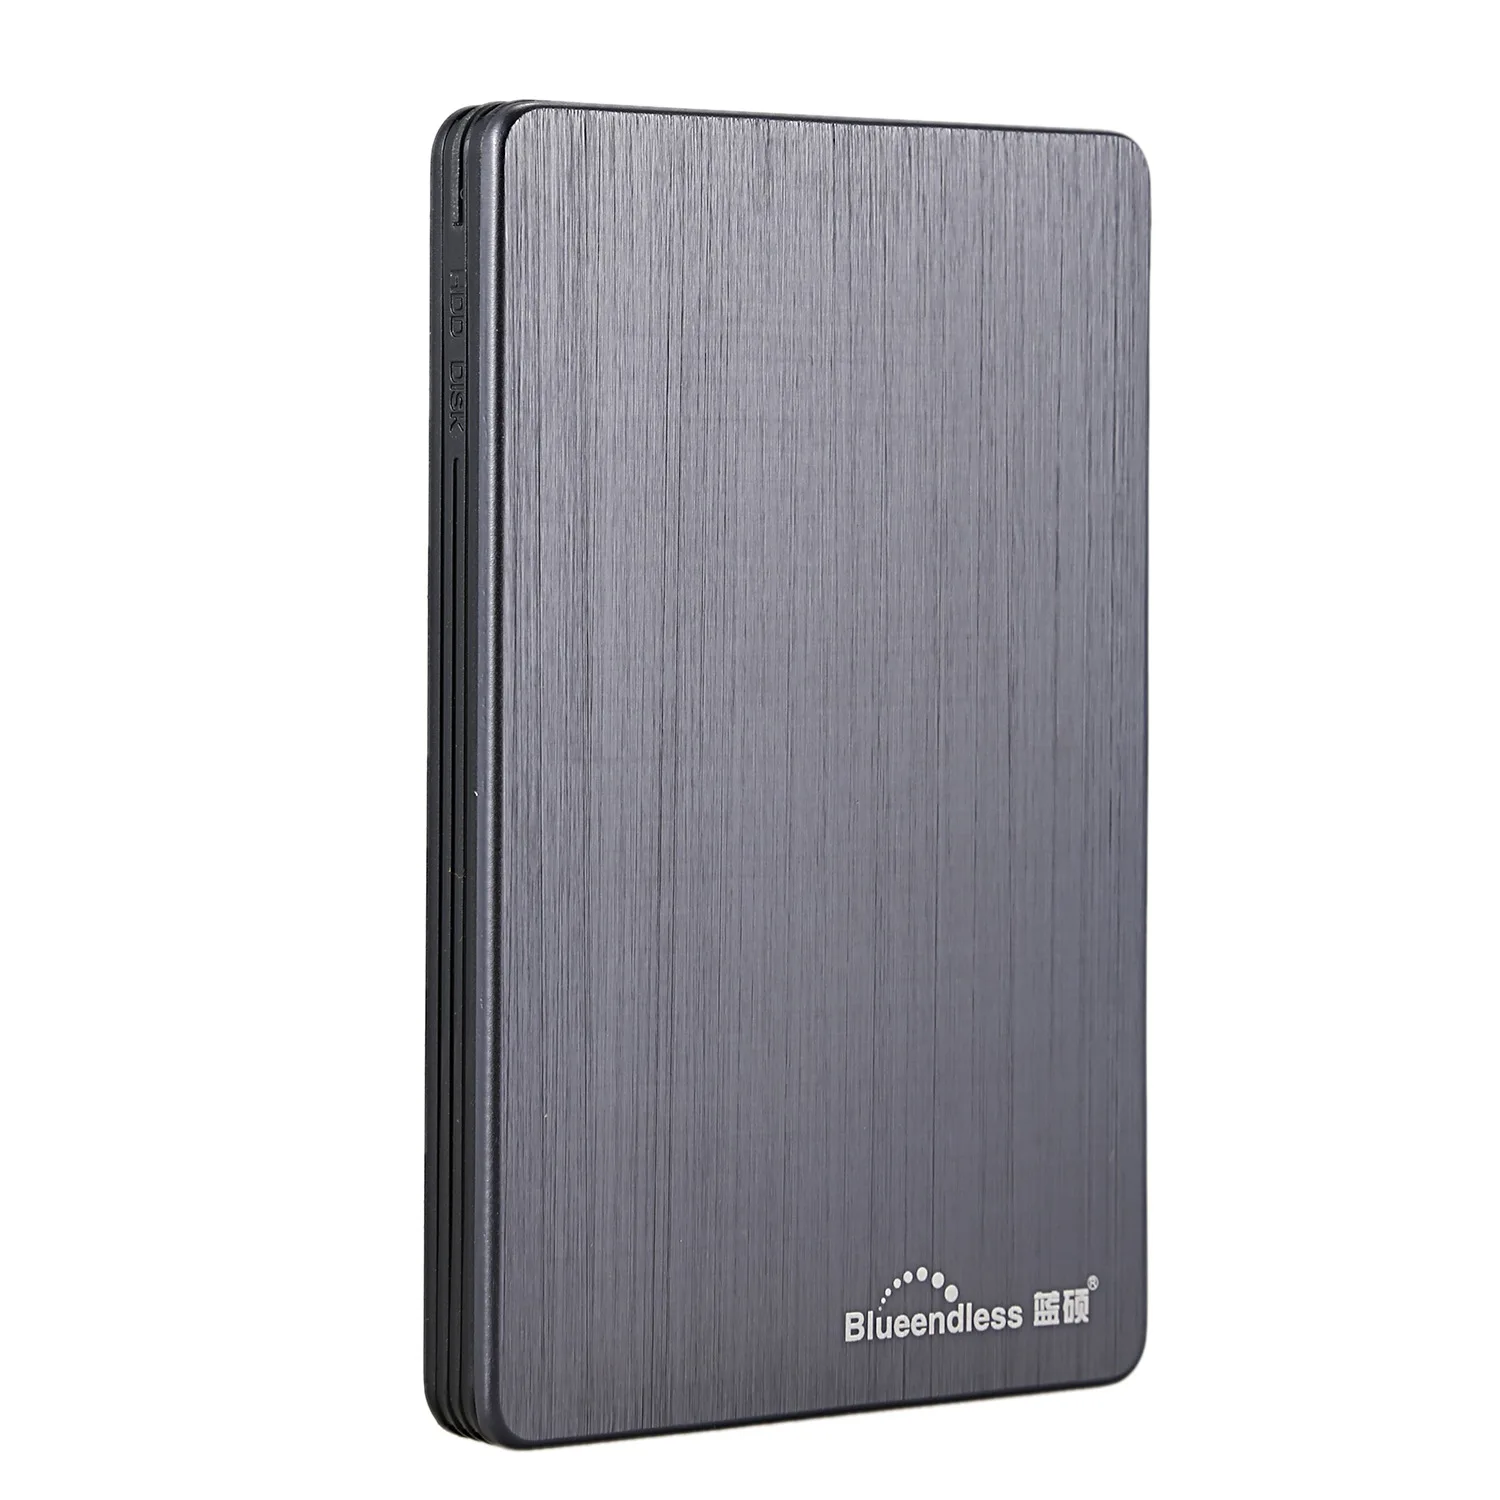 Портативный внешний жесткий диск Blueendless Usb 3 0 Hdd 2 5 дюйма для настольного ноутбука |